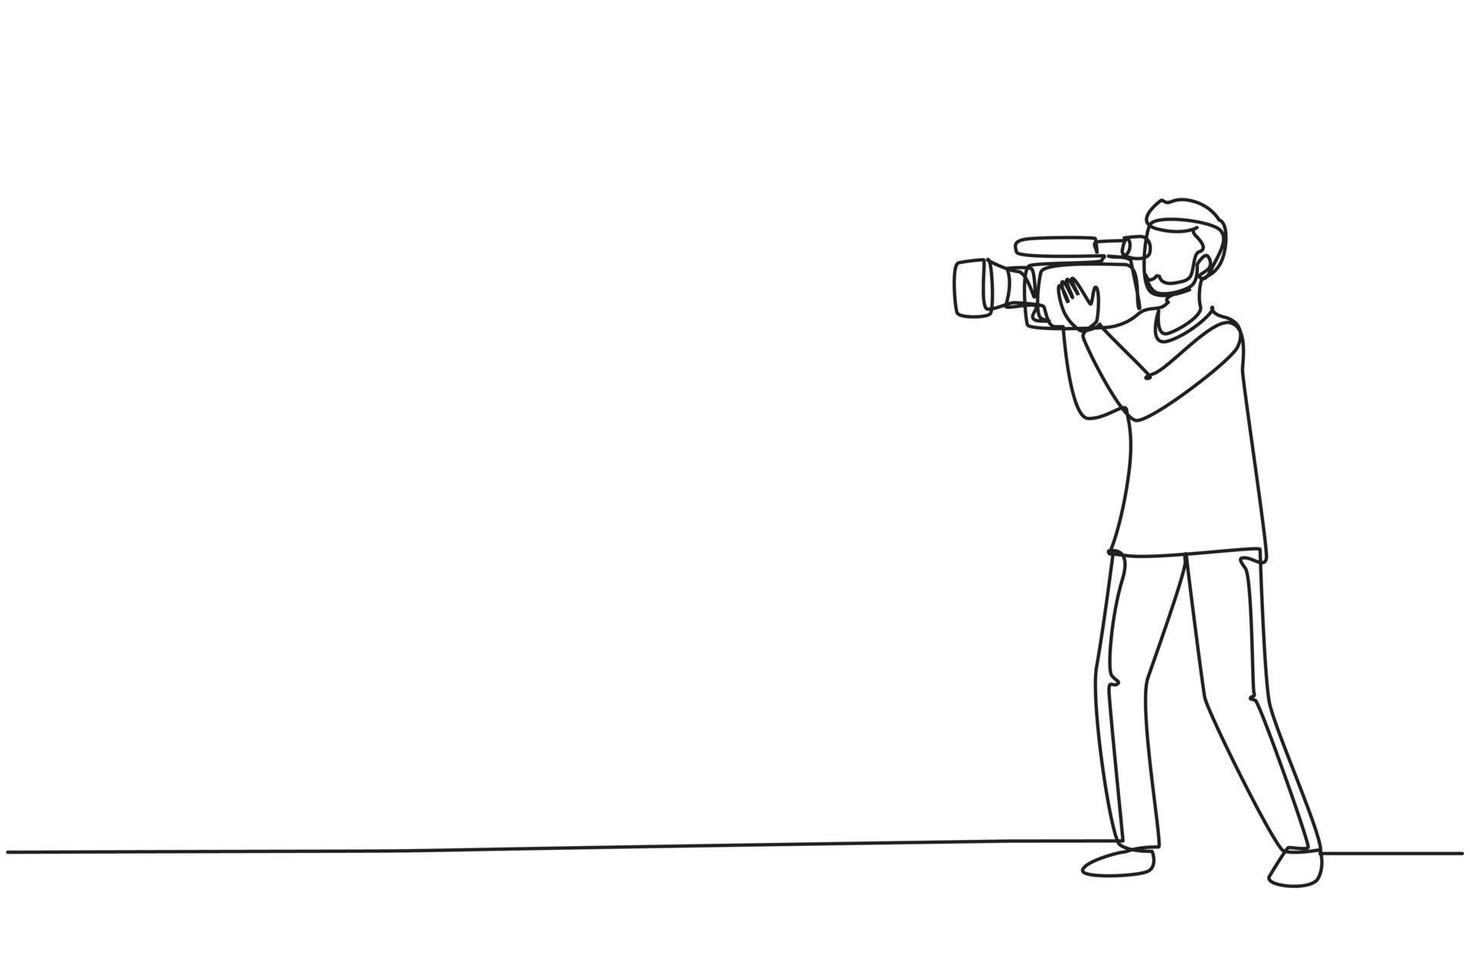 kontinuerlig en rad ritning professionell kameraoperatör håller stor kamera på axeln. arabisk kameraman, reporter som filmar tv-innehåll. jobb som videofotograf. enkel rad rita design vektorillustration vektor